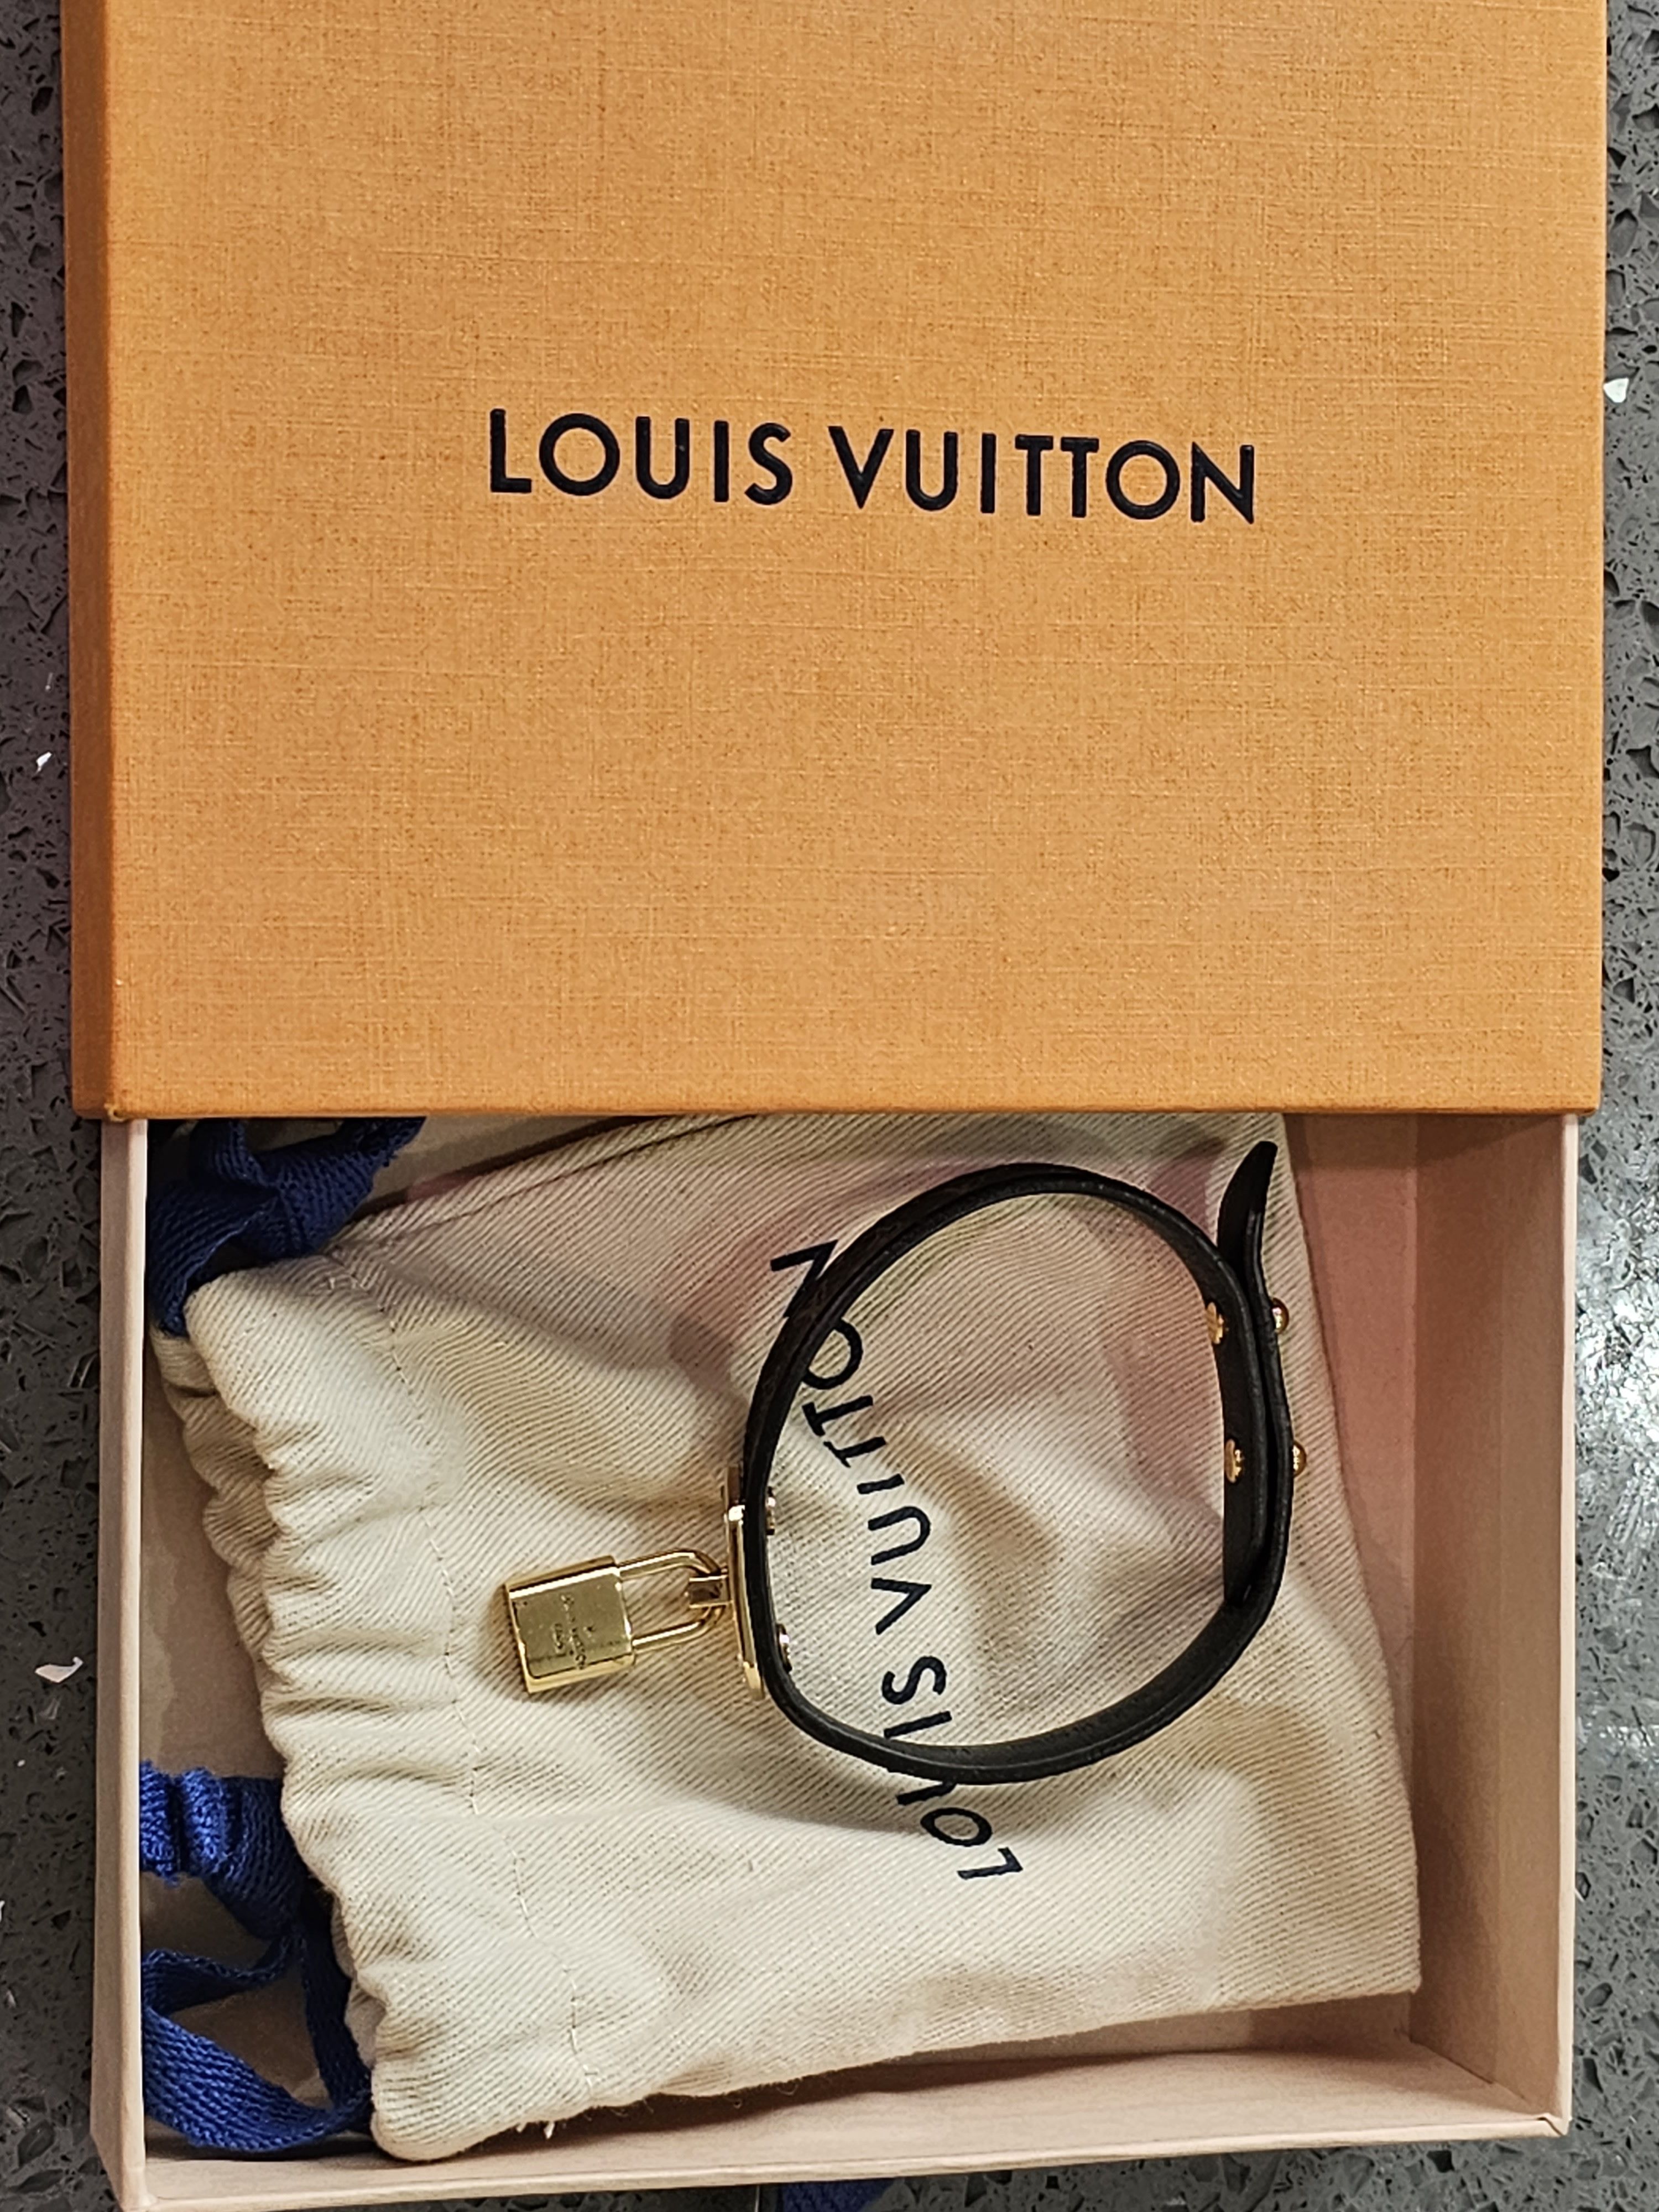 Louis Vuitton Lock Me Bracelet Gold SYCY136 – LuxuryPromise